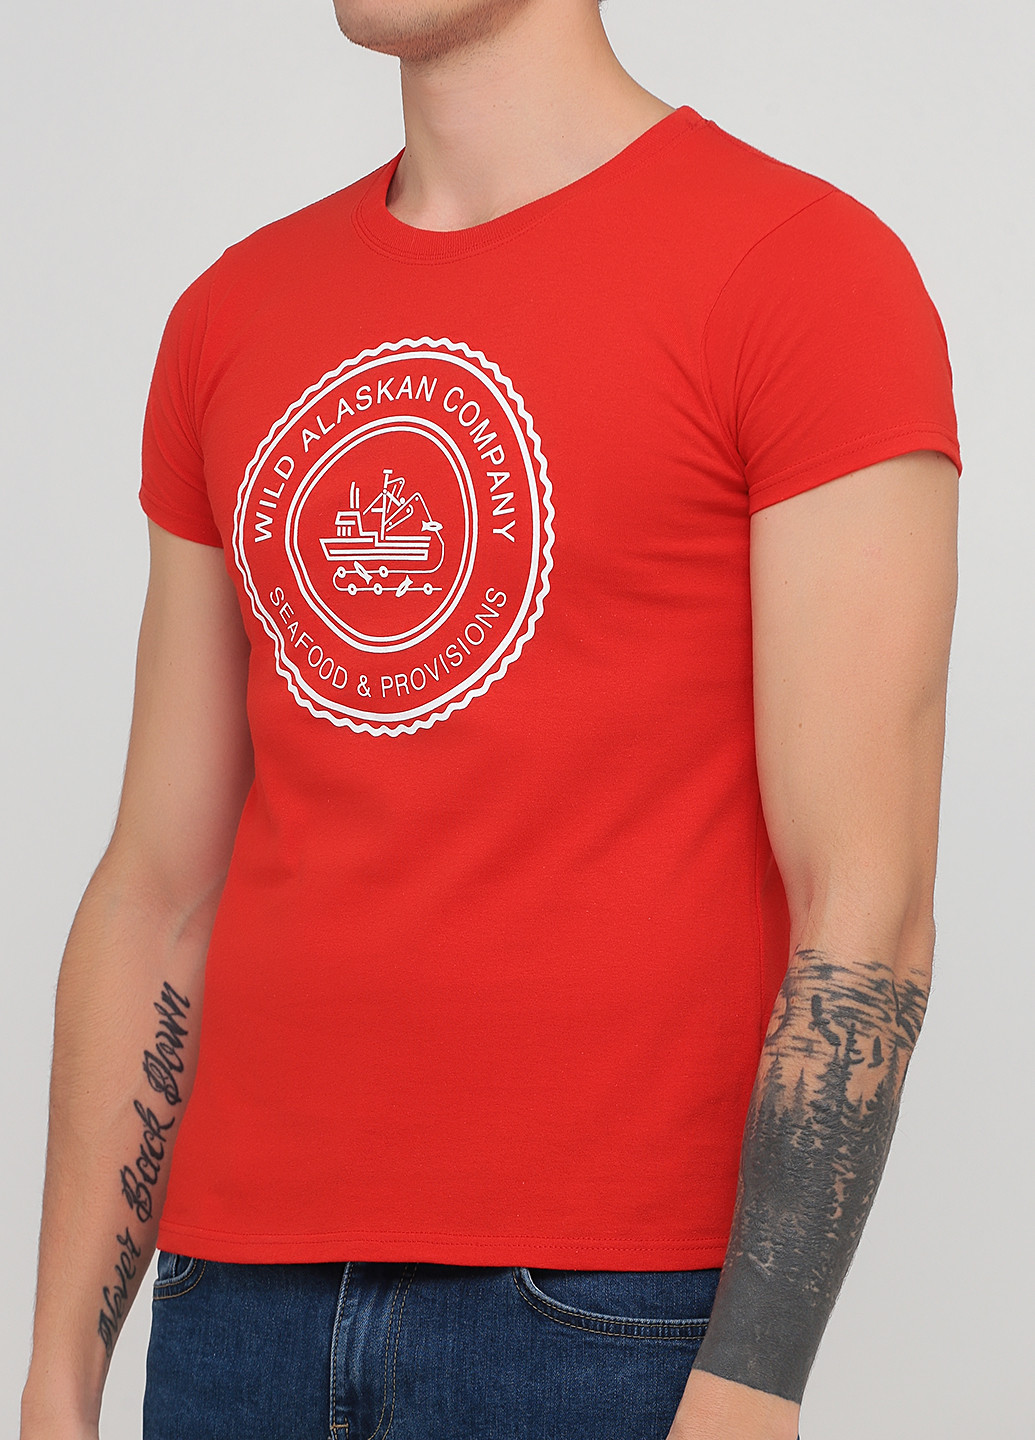 Червона футболка Gildan